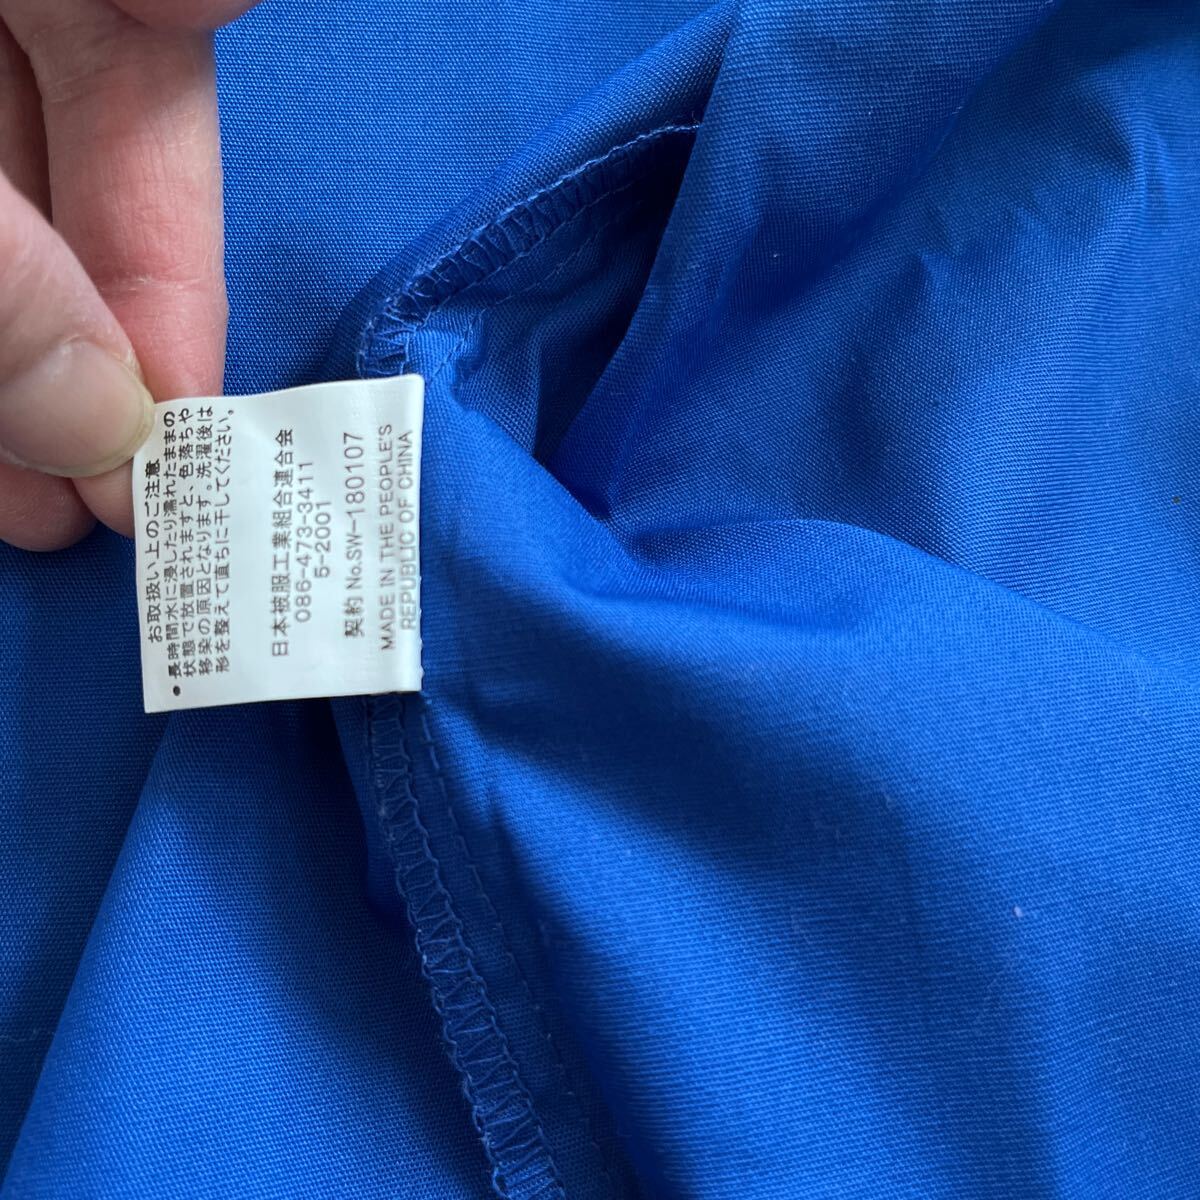  для взрослых пальто happi. .. одноцветный синий свободный размер поясница шнур имеется 